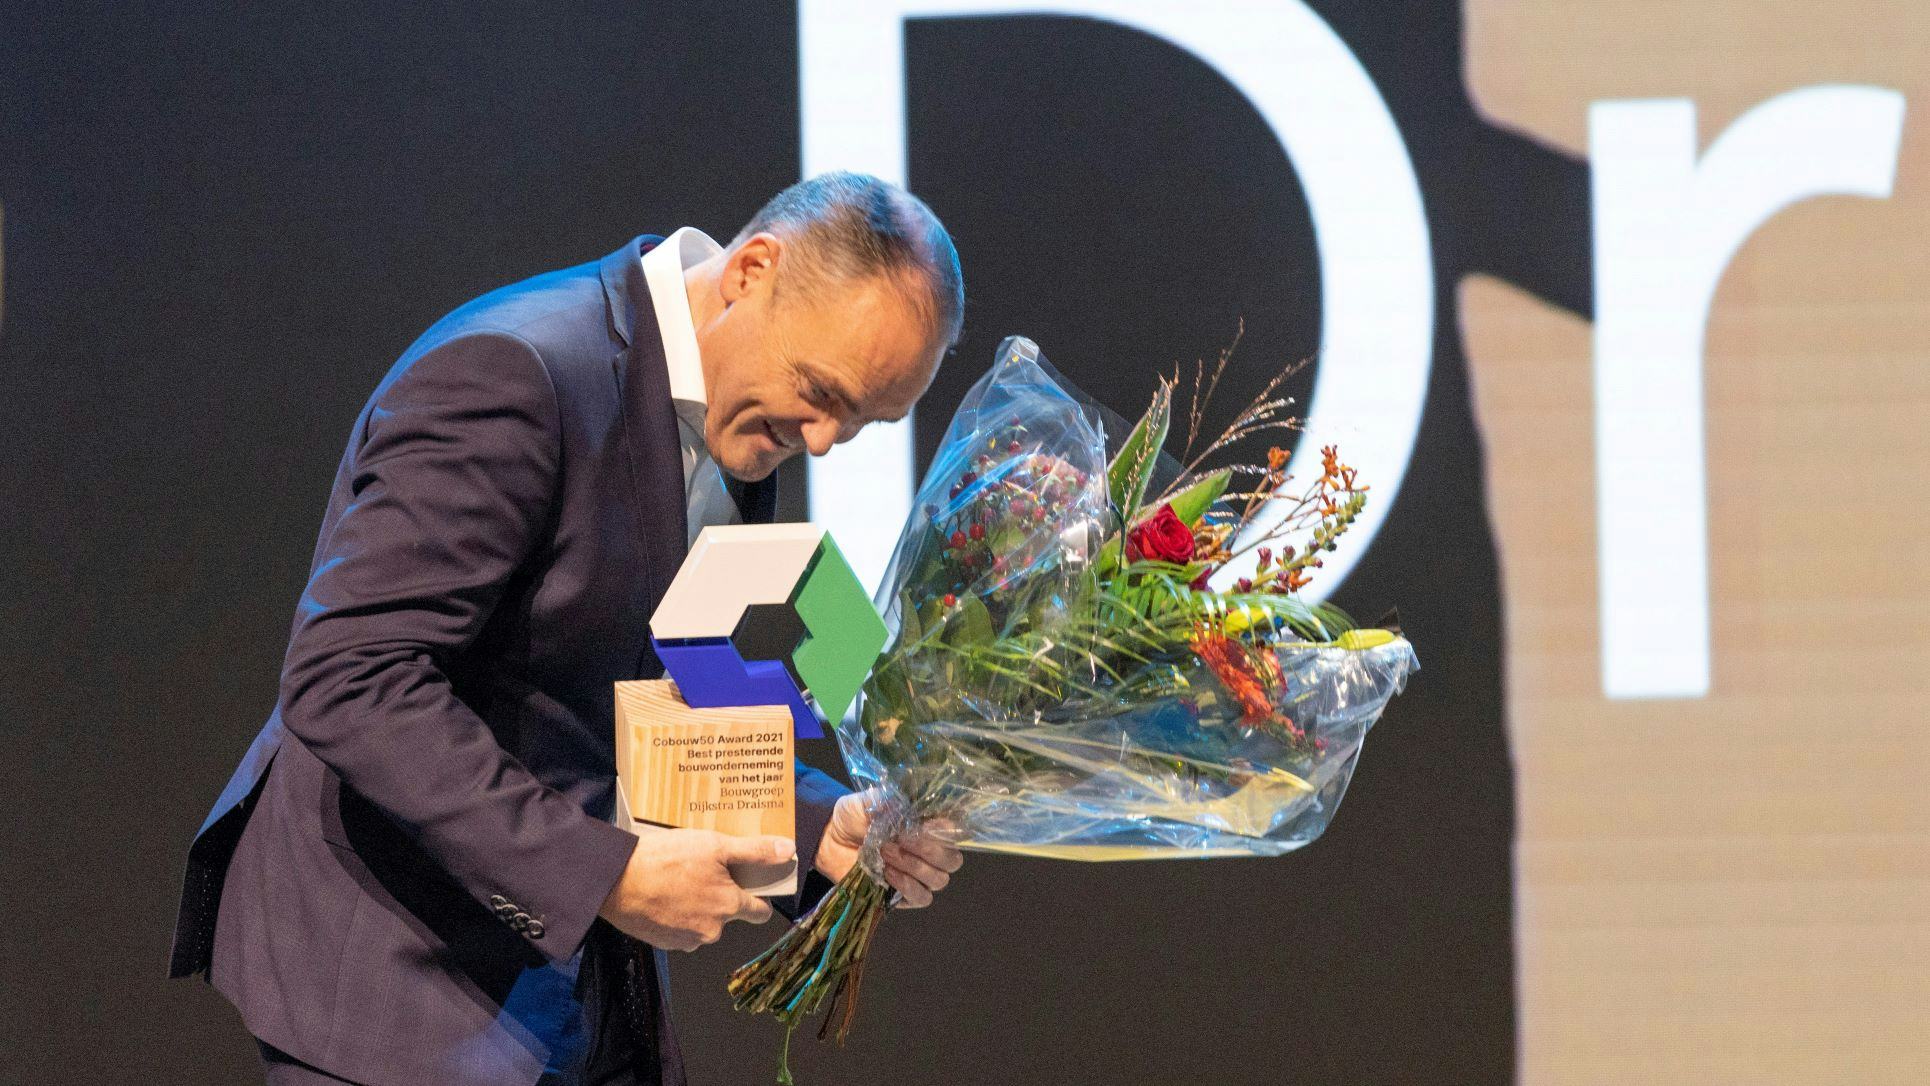 Bouwbedrijf Dijkstra Draisma won de Award in 2021 en 2020. Foto: APA/Sjef Prins